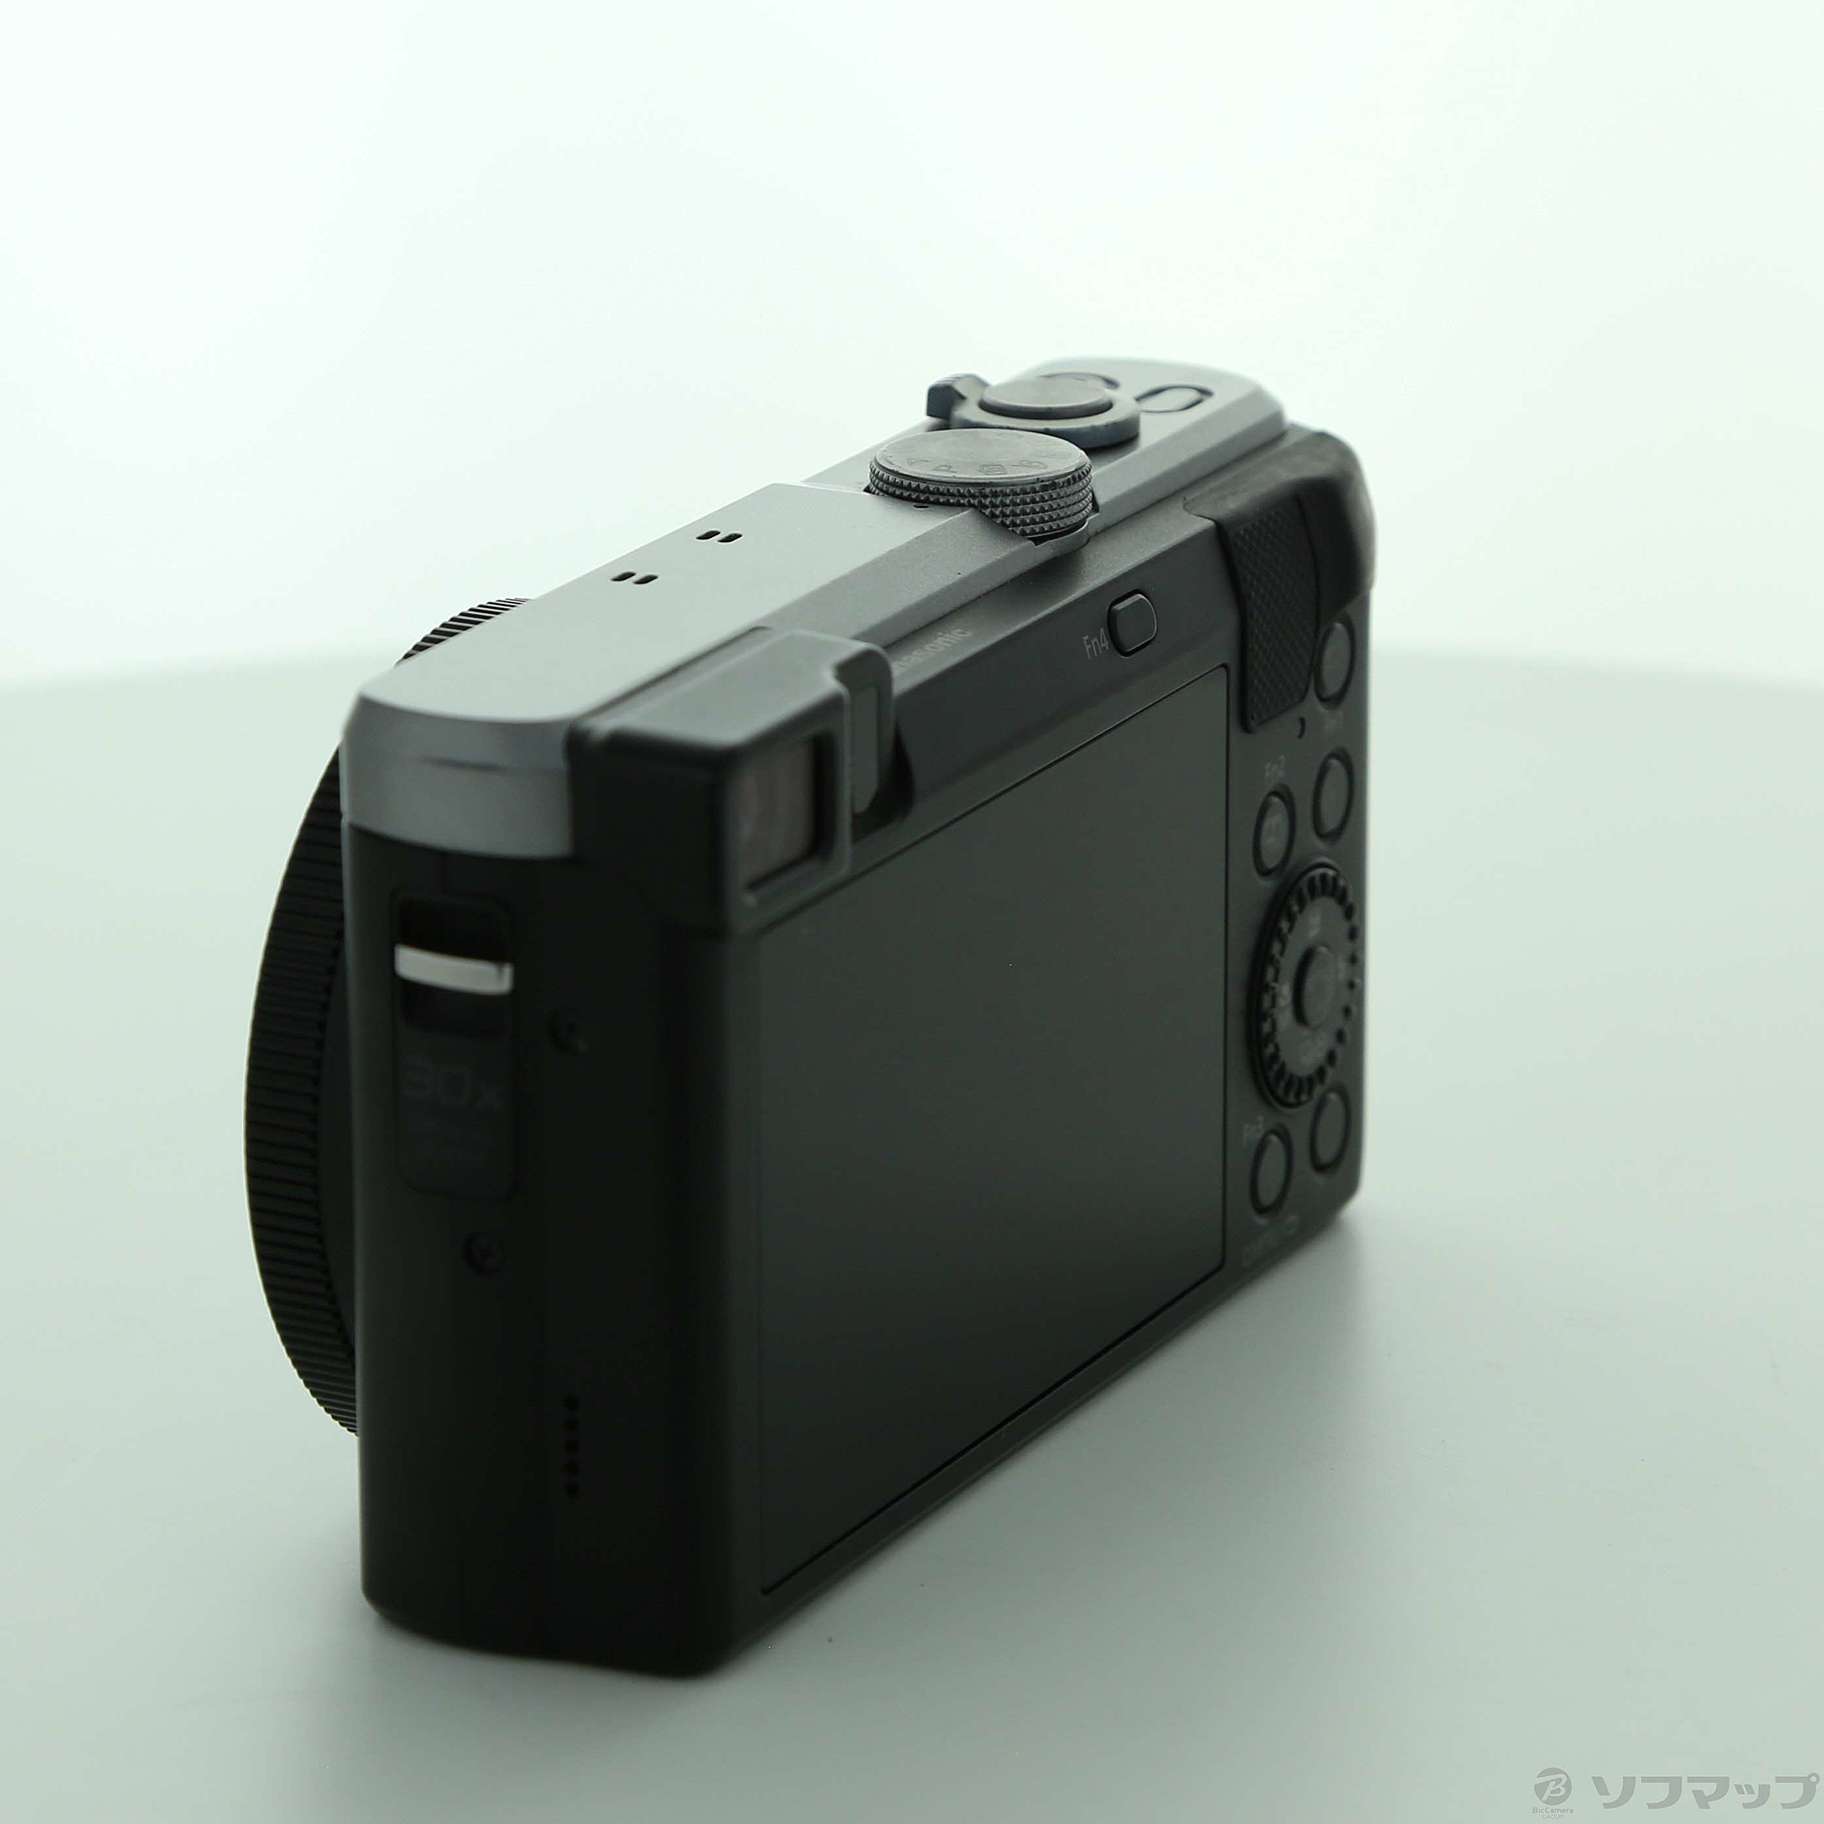 値下LUMIX DMC-TZ85 4k デジタルカメラ